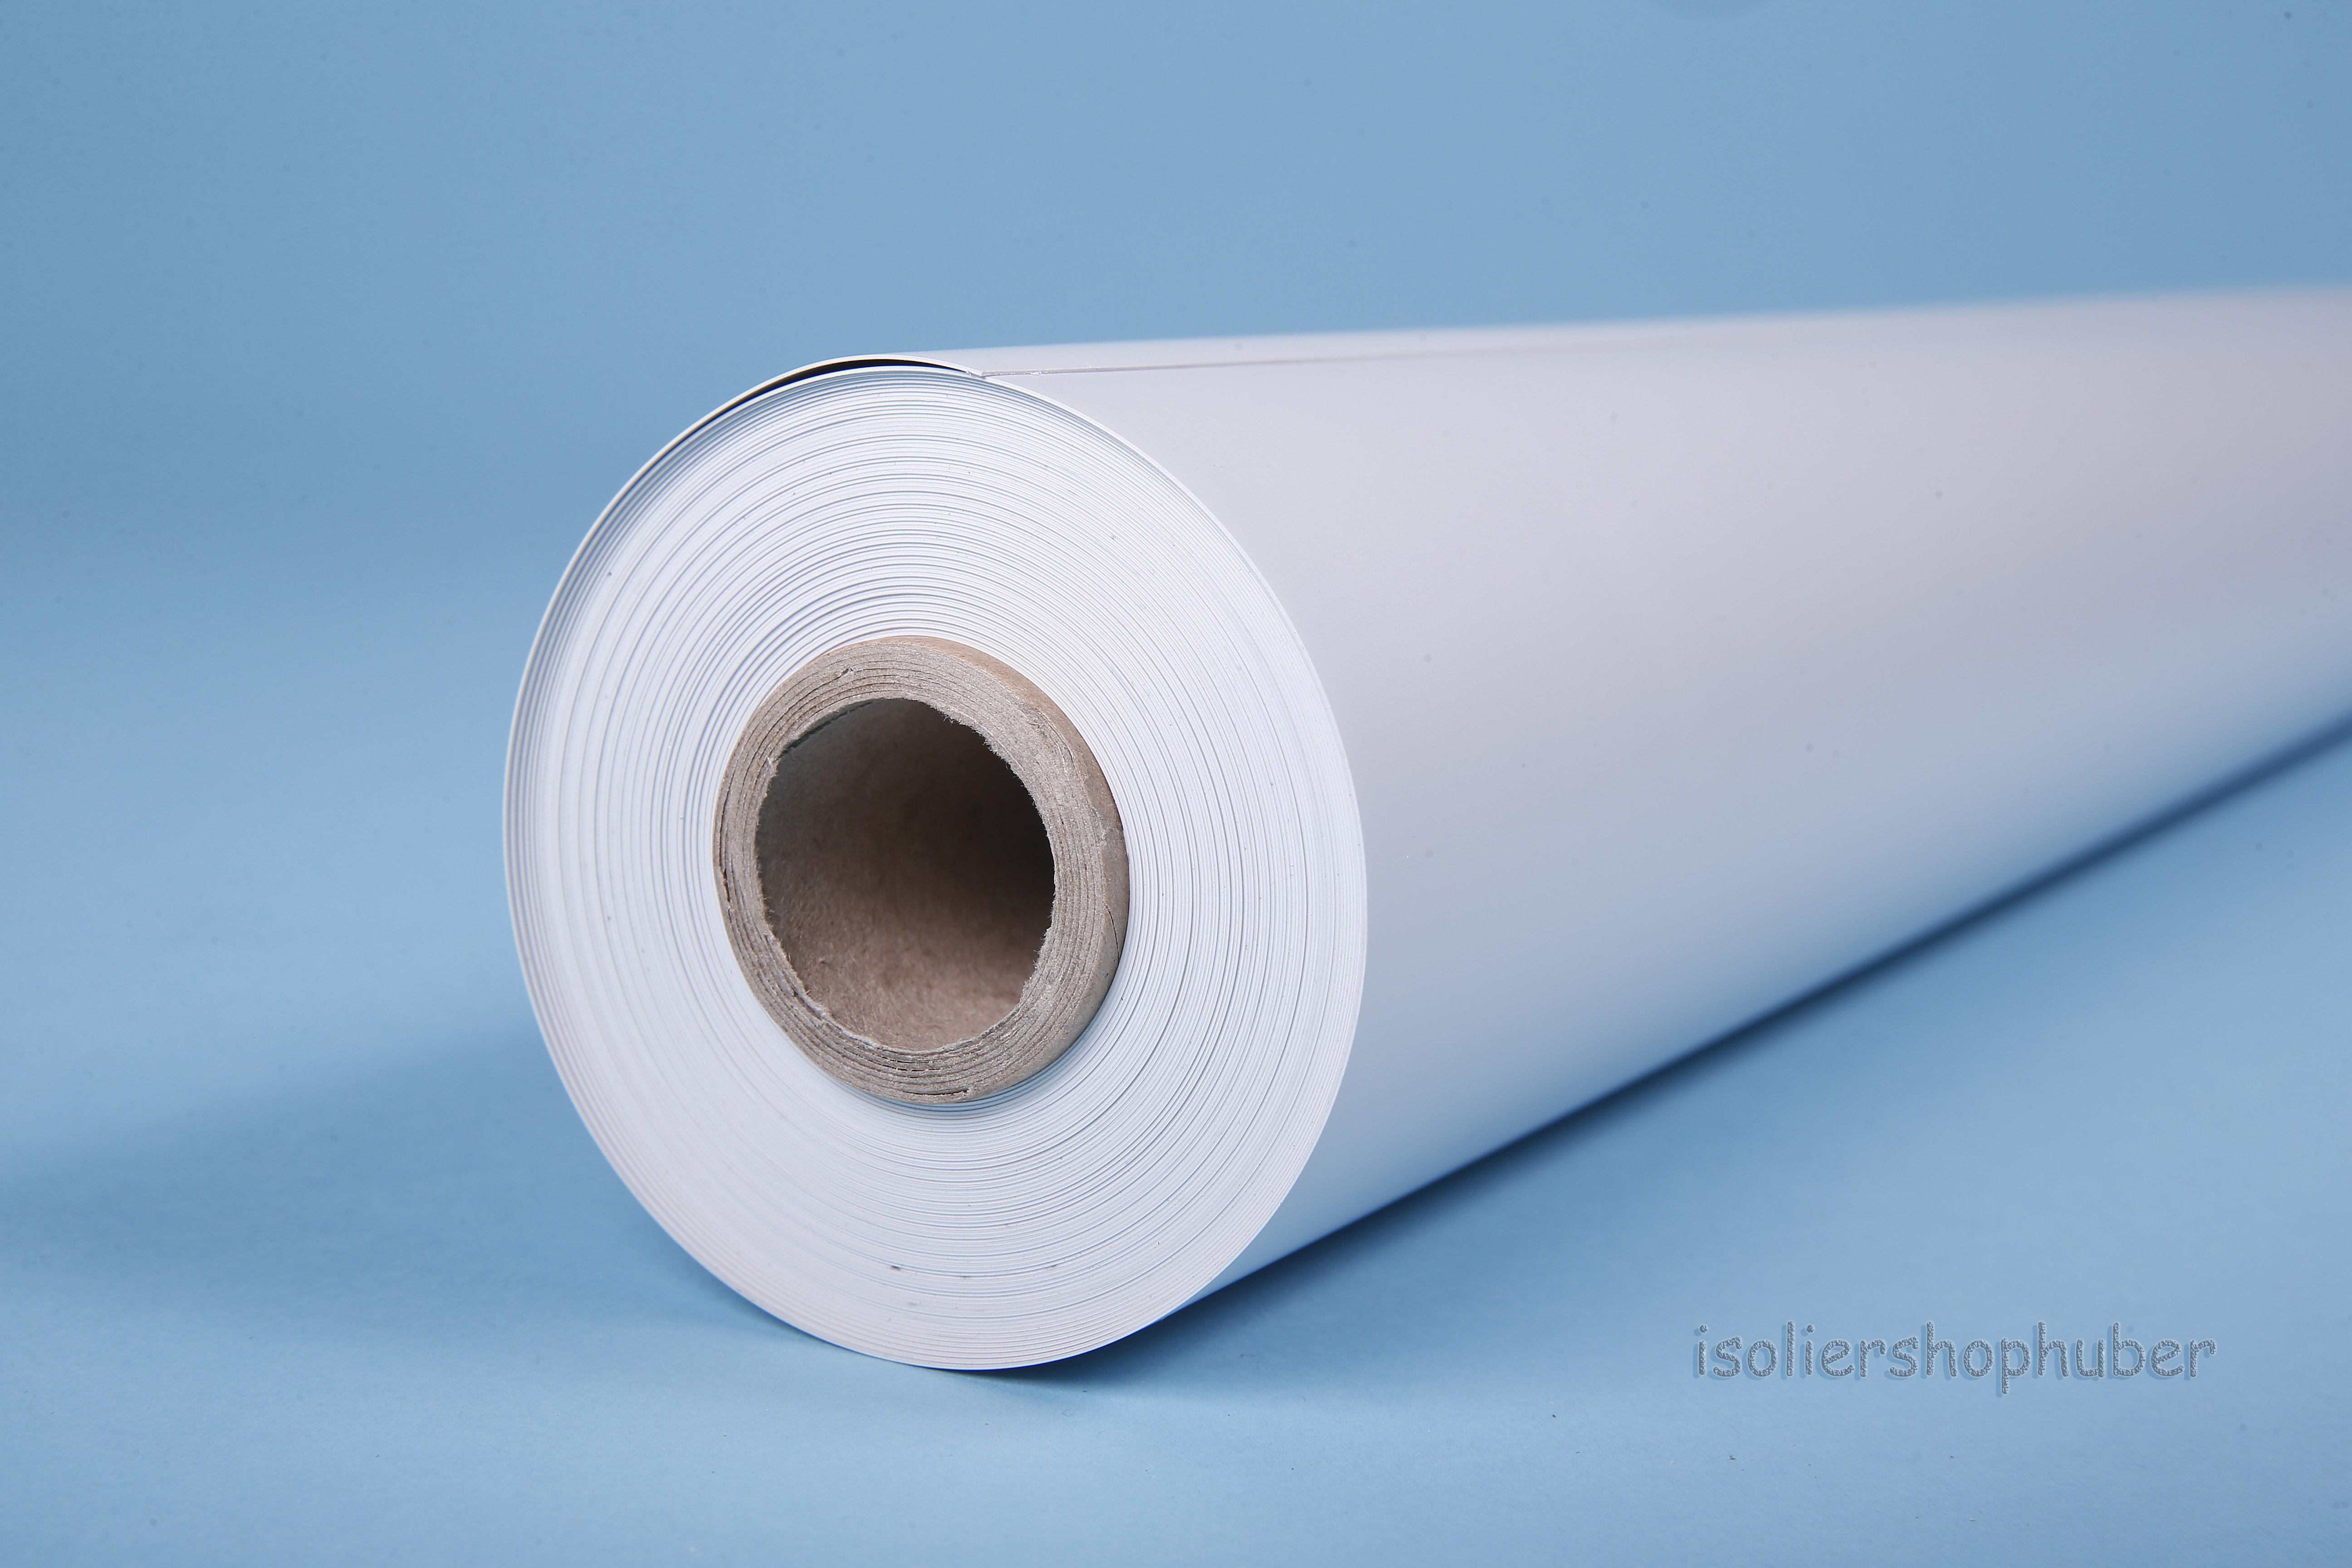 Isoliershophuber - 5,0 m² Rolle PVC - Hartfolie, 1.000 mm breit Isolierung